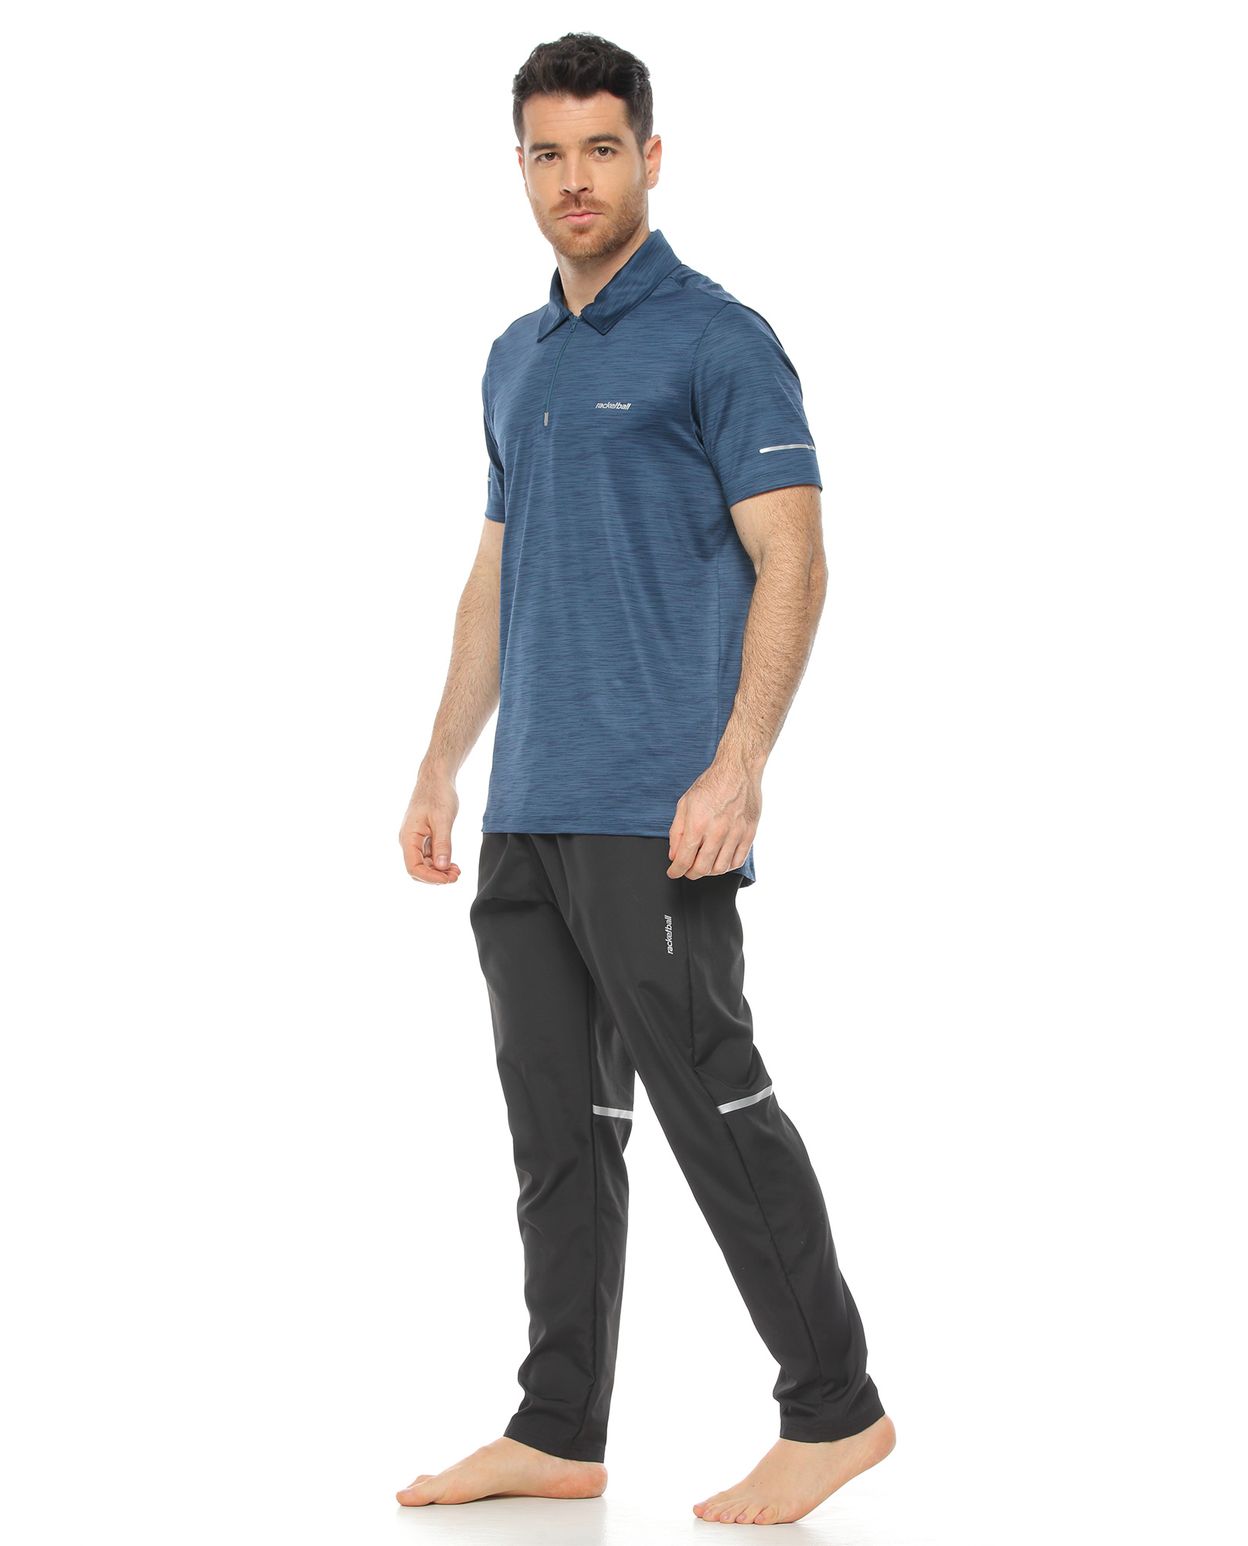 modelo con camiseta polo deportiva color petróleo y pantalon semiajustado negro para hombre cuerpo completo